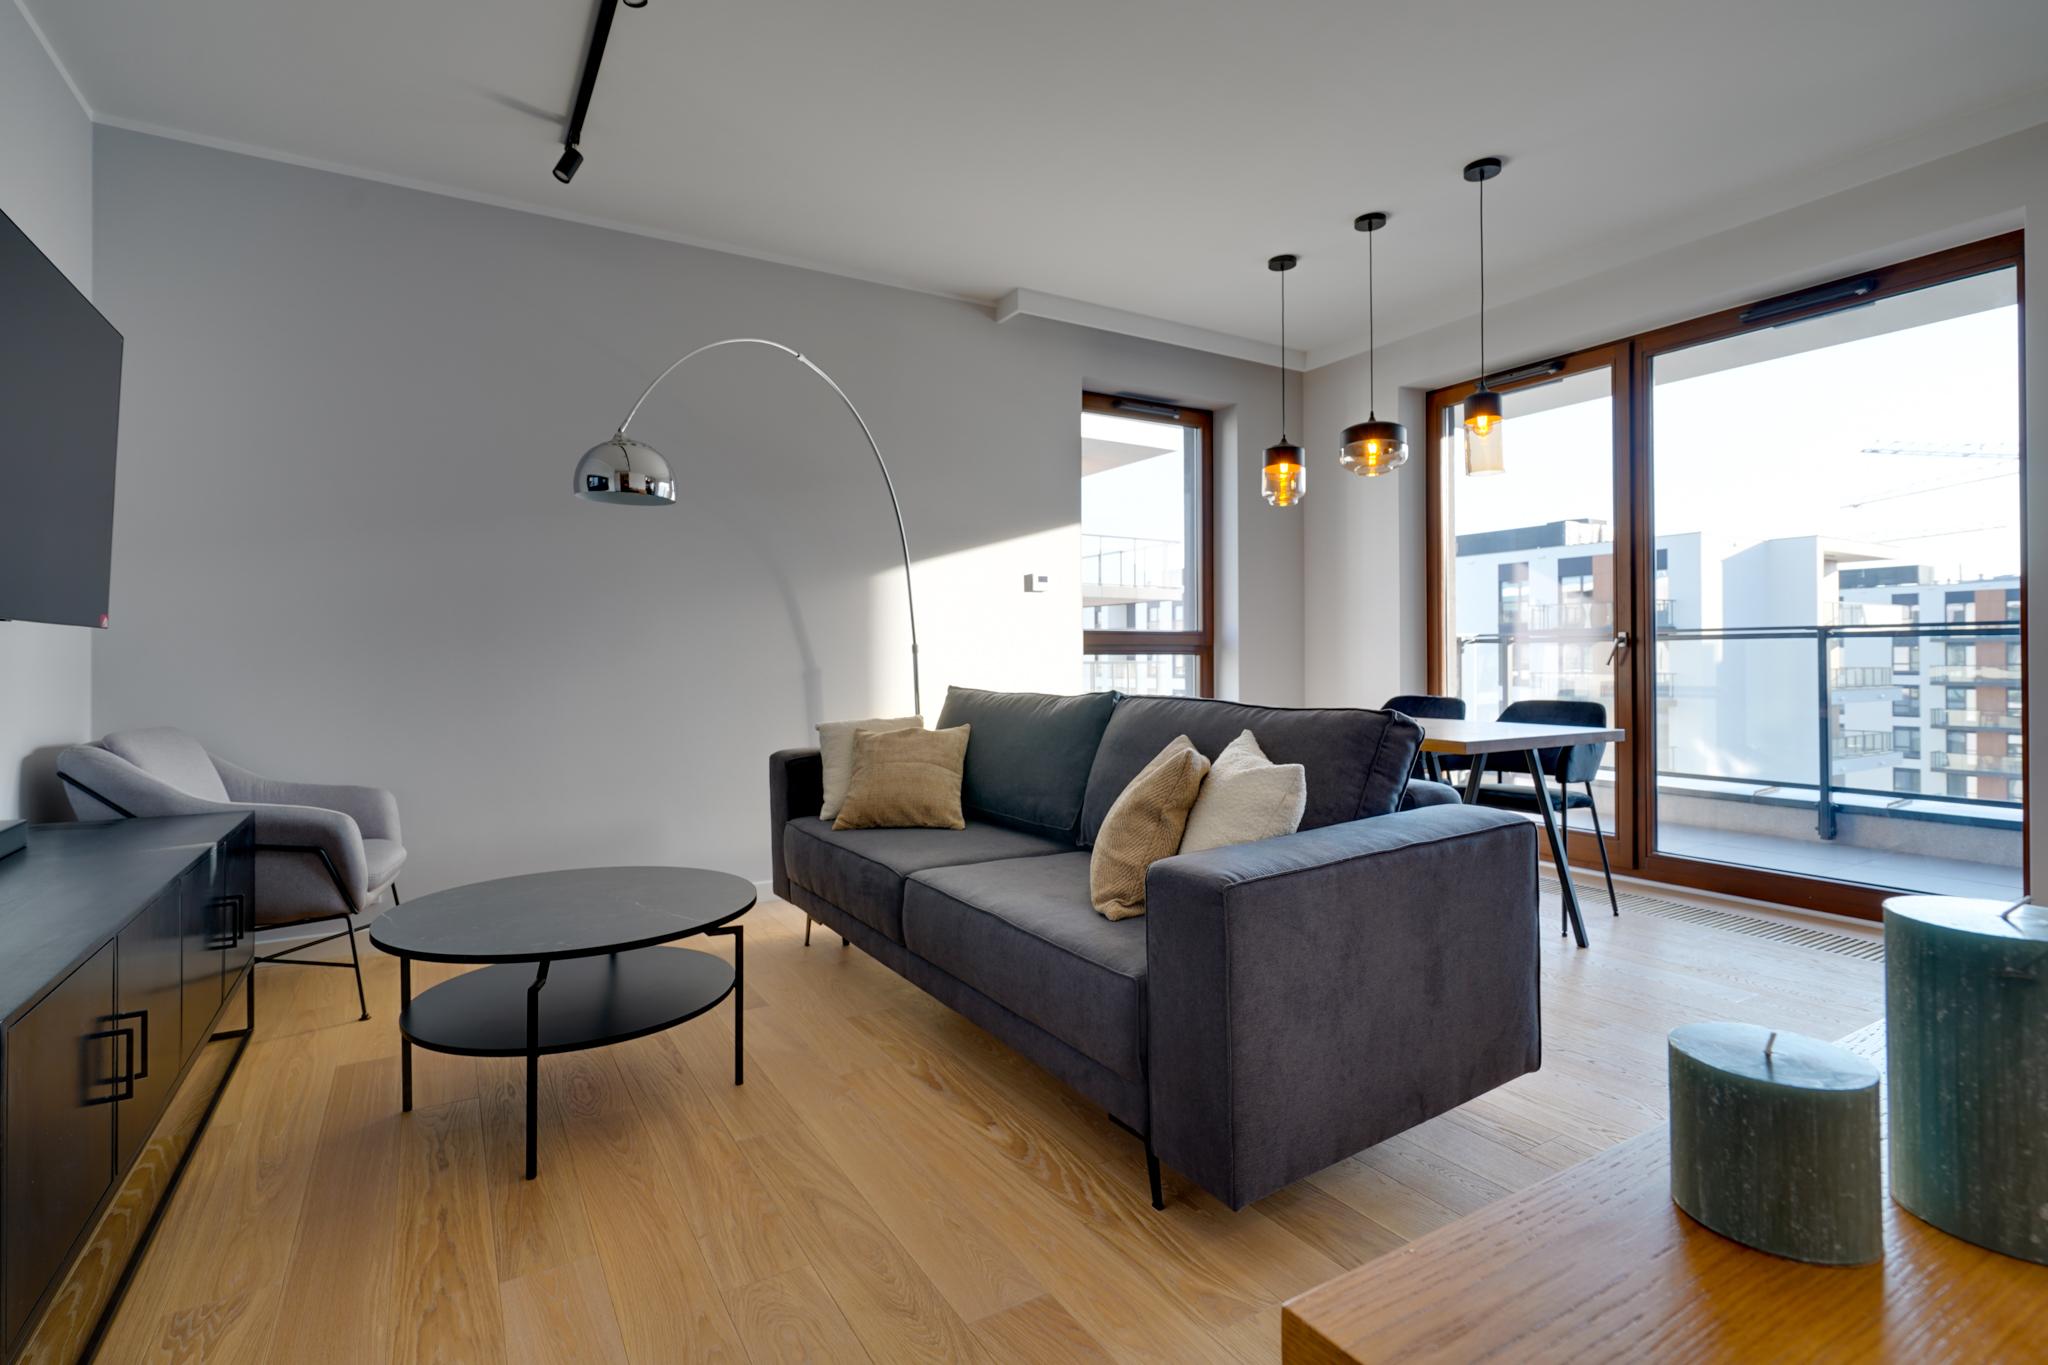 Mieszkanie w stylu loftowym - pakiet komfortowy